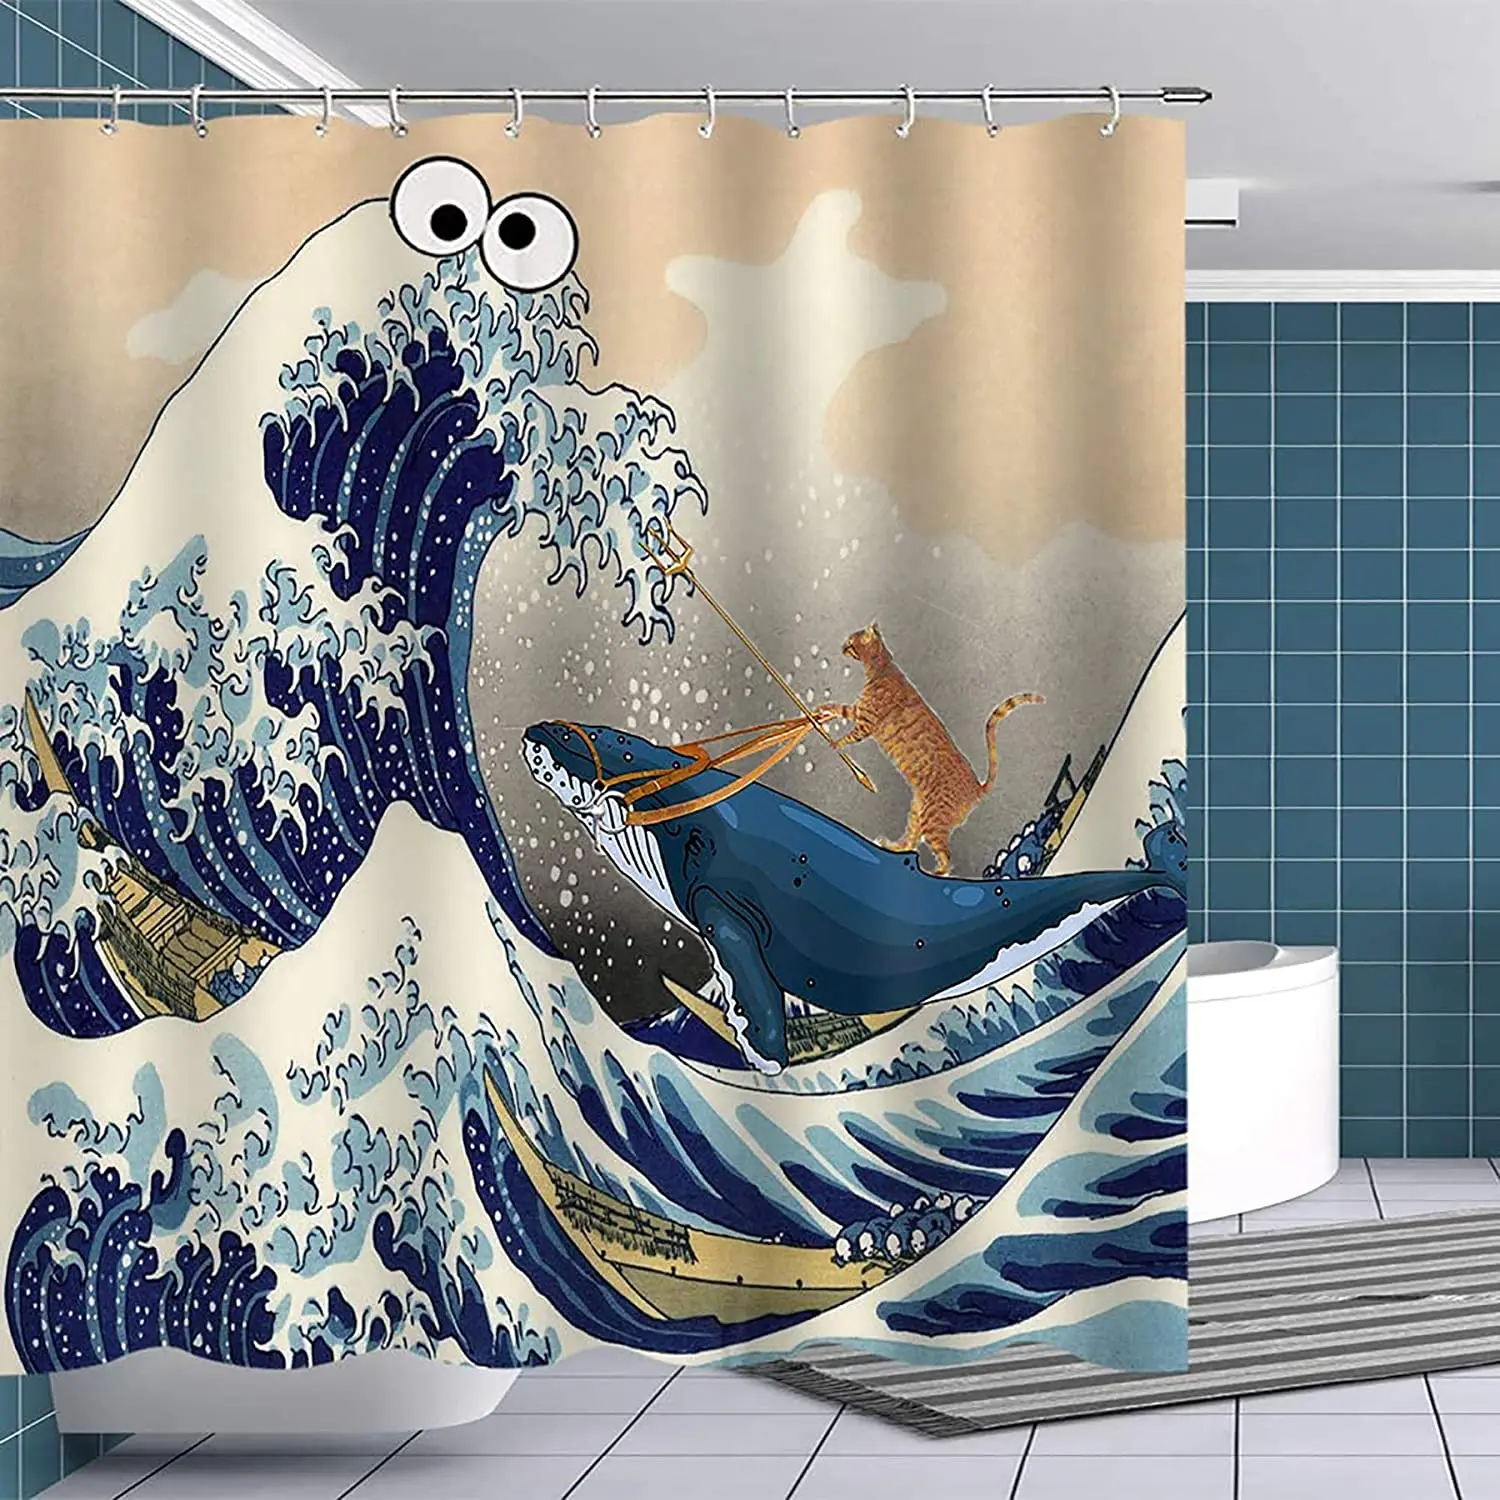 

Забавная Водонепроницаемая занавеска для душа с рисунками животных, кошка ездит на ките, украшение для ванной комнаты разных размеров с крю...